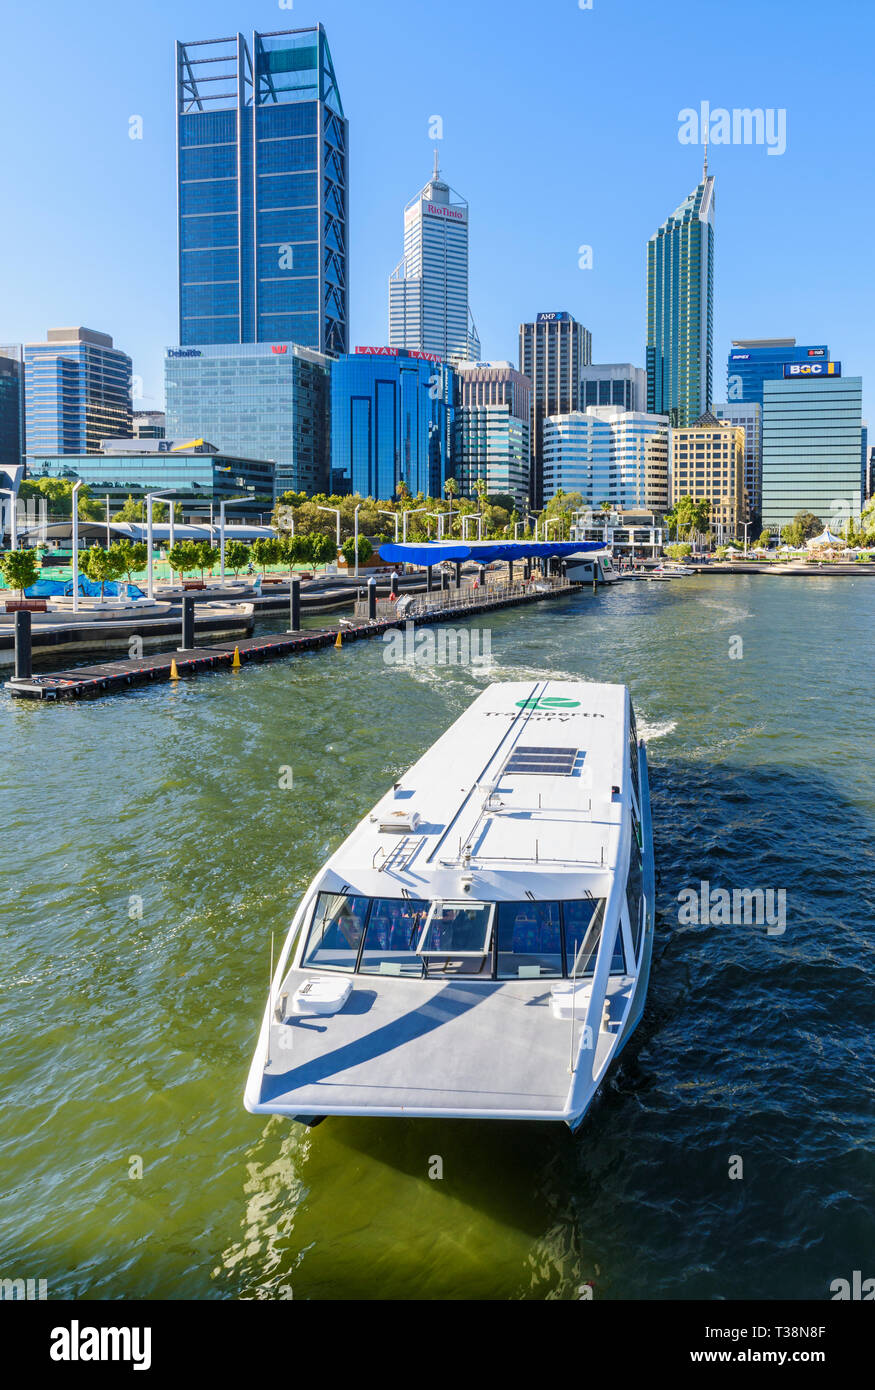 Transperth Ferry and Perth cityscape including Elizabeth Quay and skyscrapers of Perth CBD, Perth, Western Australia, Australia Stock Photo